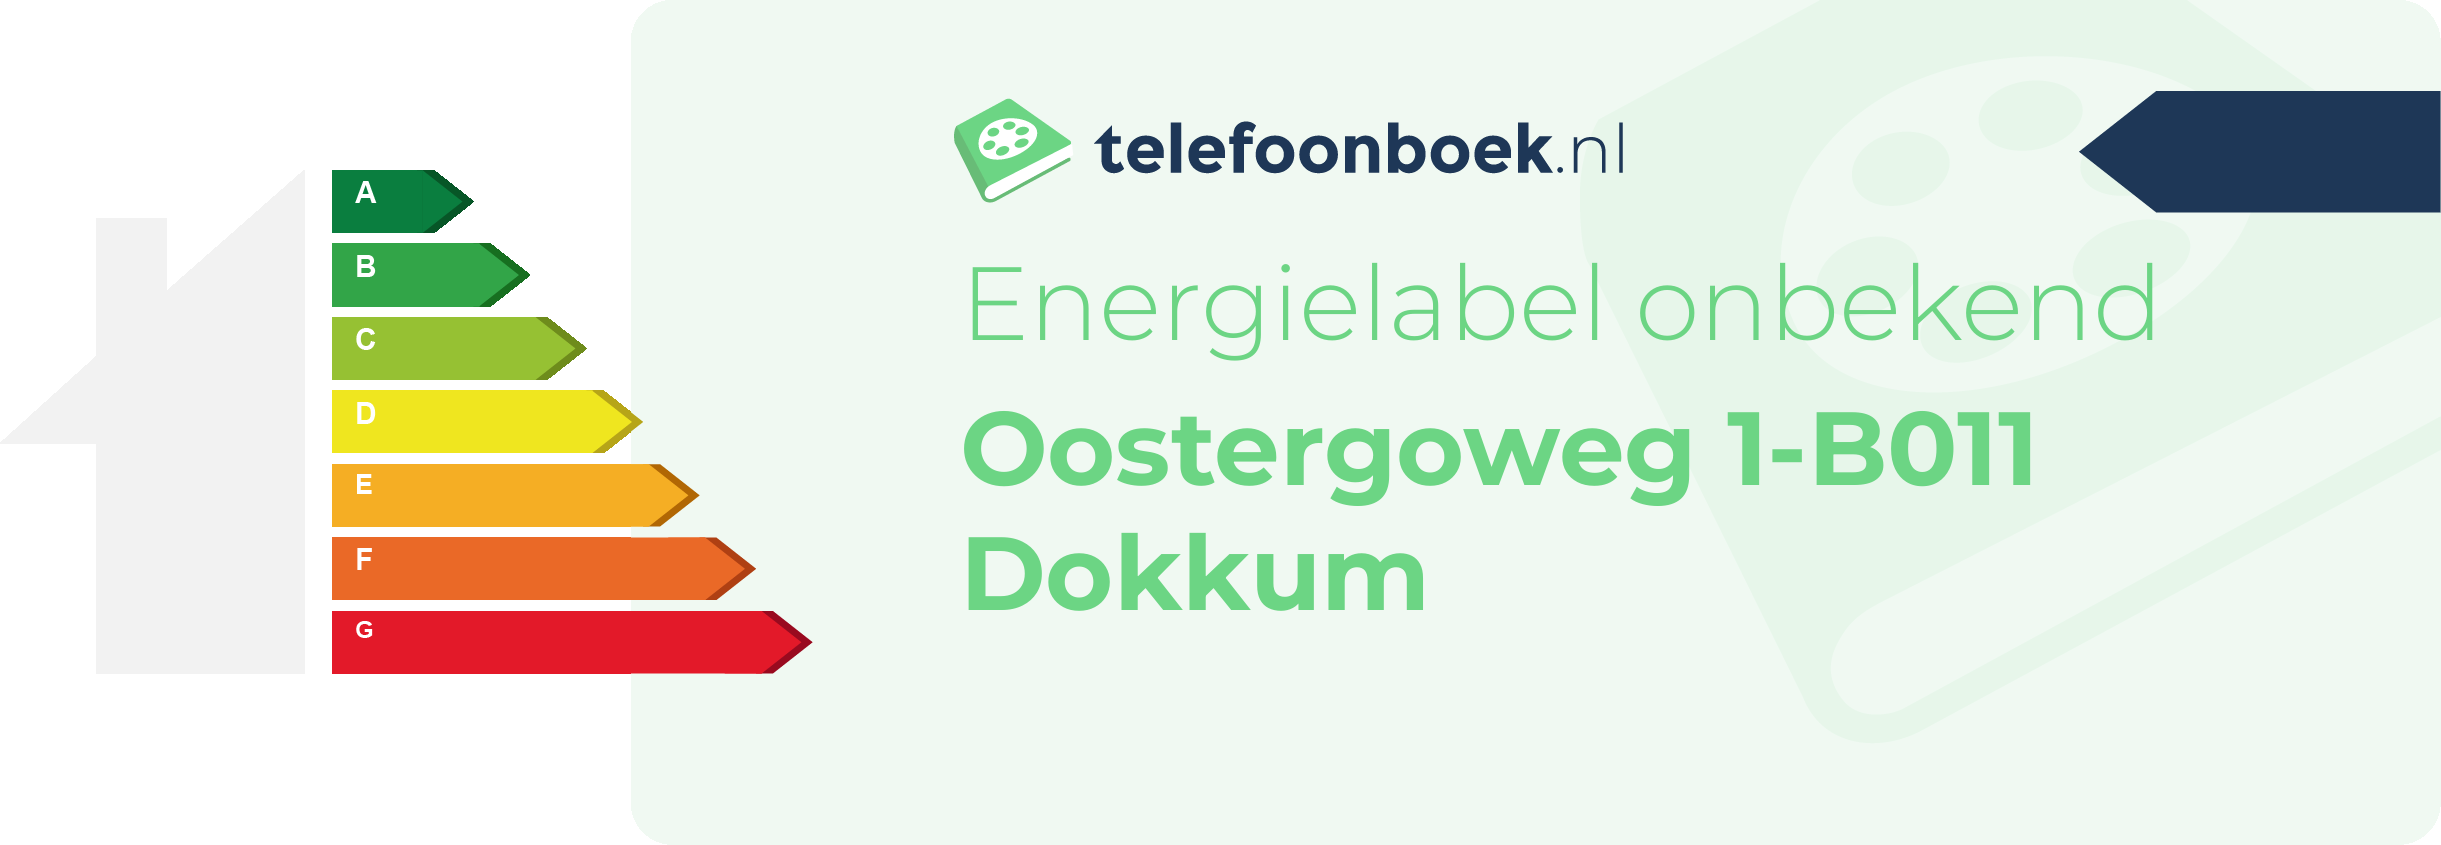 Energielabel Oostergoweg 1-B011 Dokkum